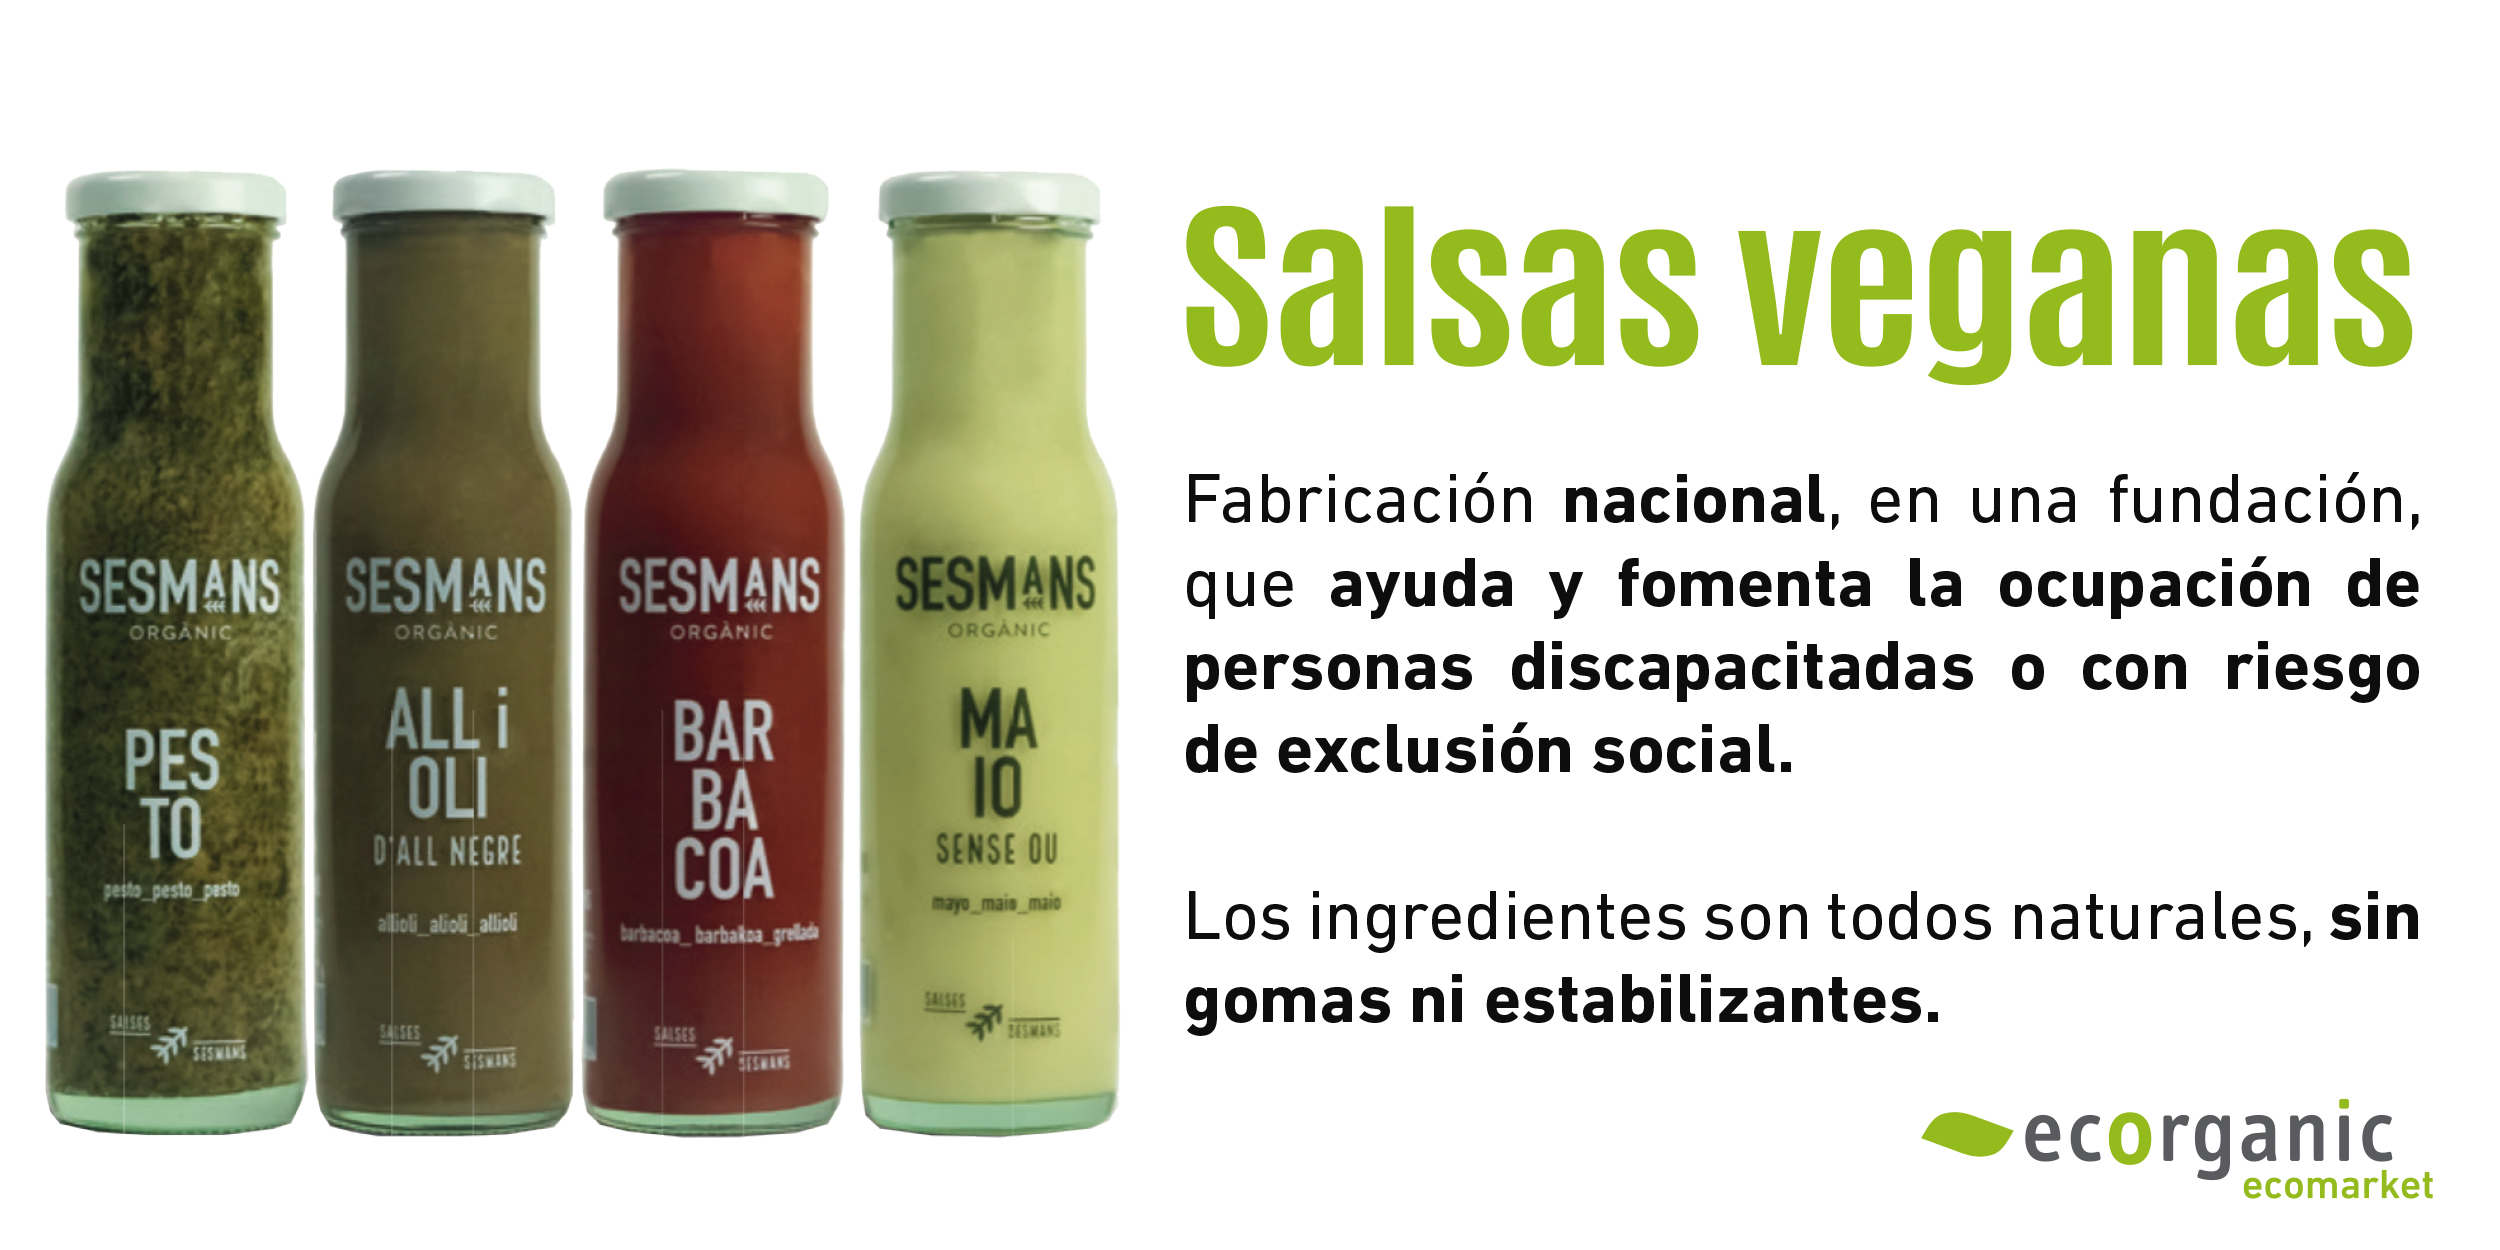 Salsas veganas y ecológicas (Sesmans)